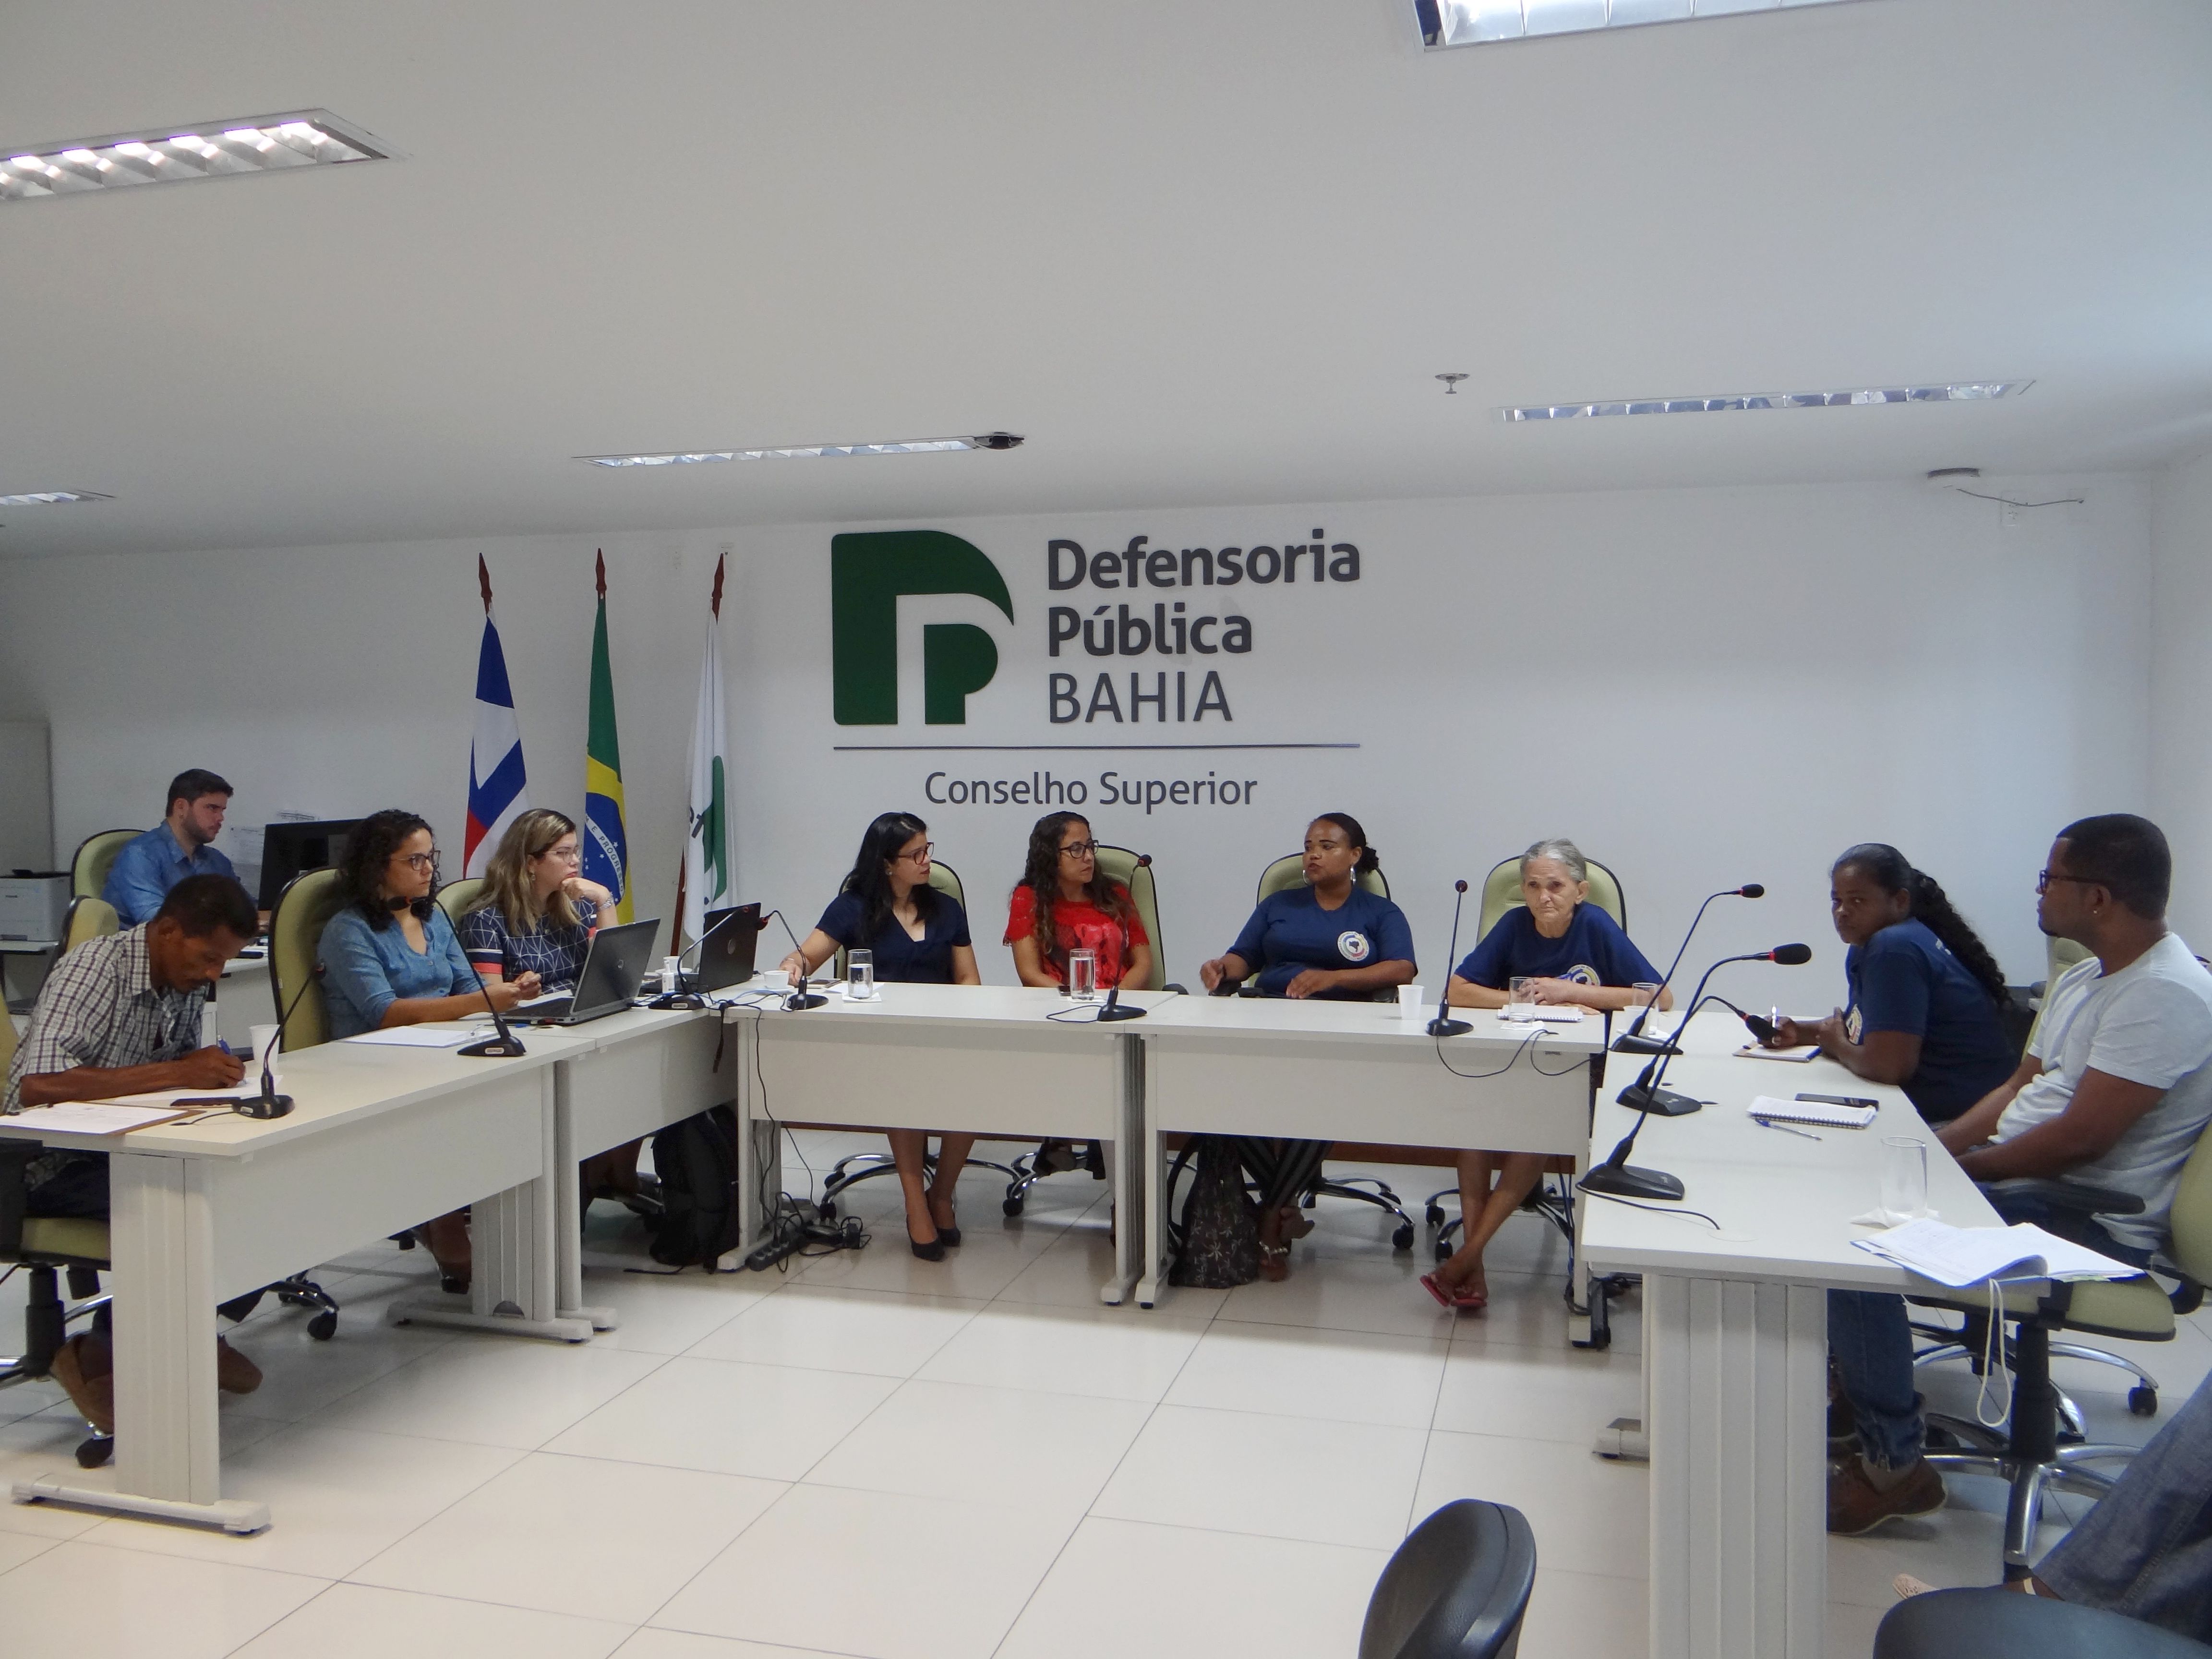 Apoio para os catadores de materiais recicláveis no carnaval de Salvador 2019 é debatido na Defensoria Púbica do Estado